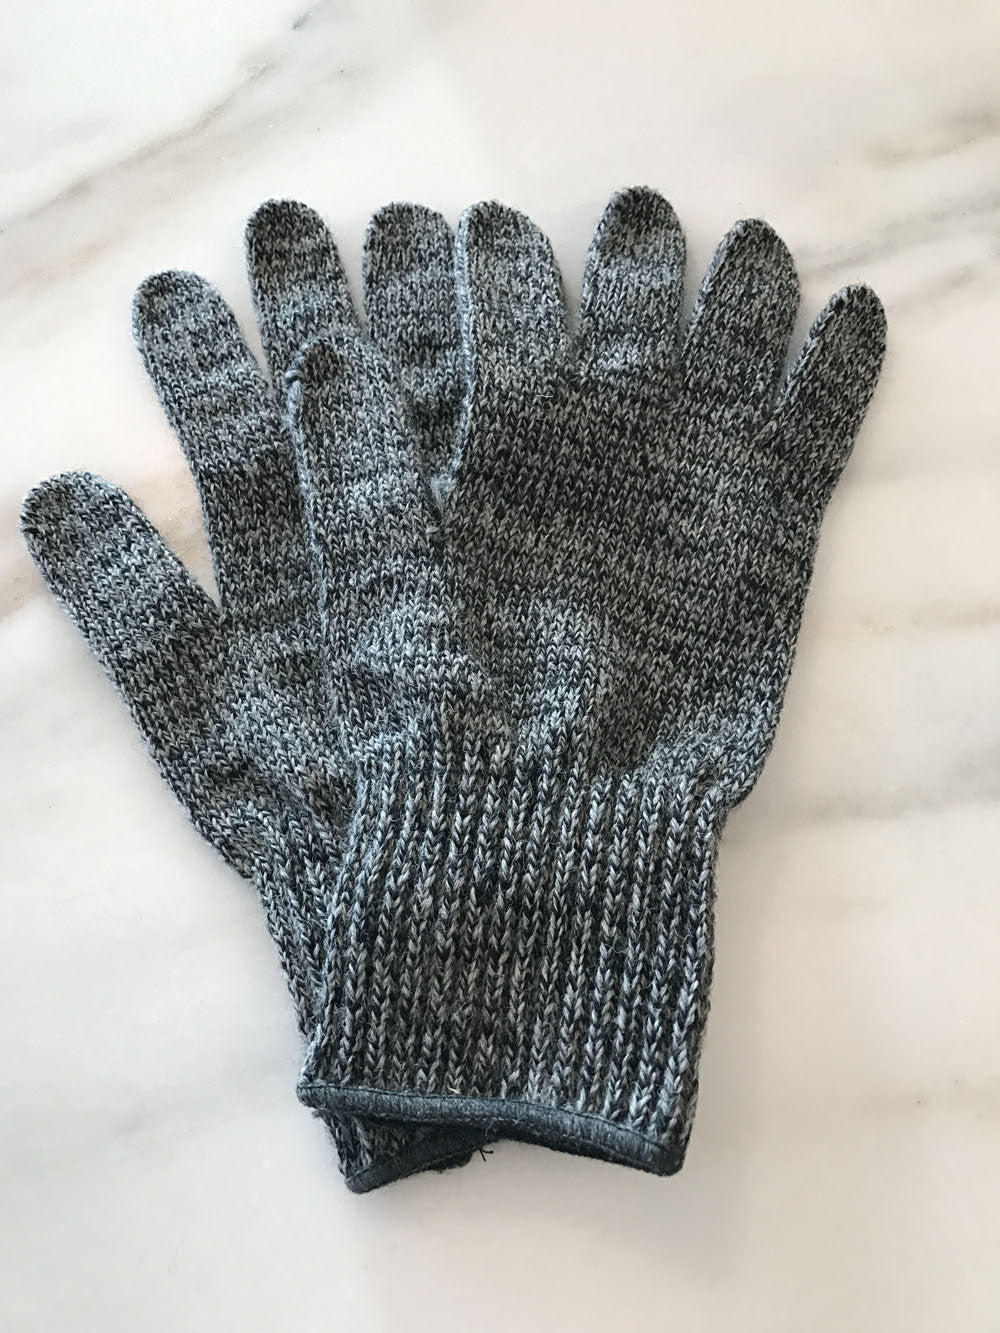 Ragg Wool Gloves - Great Alaska Glove Company